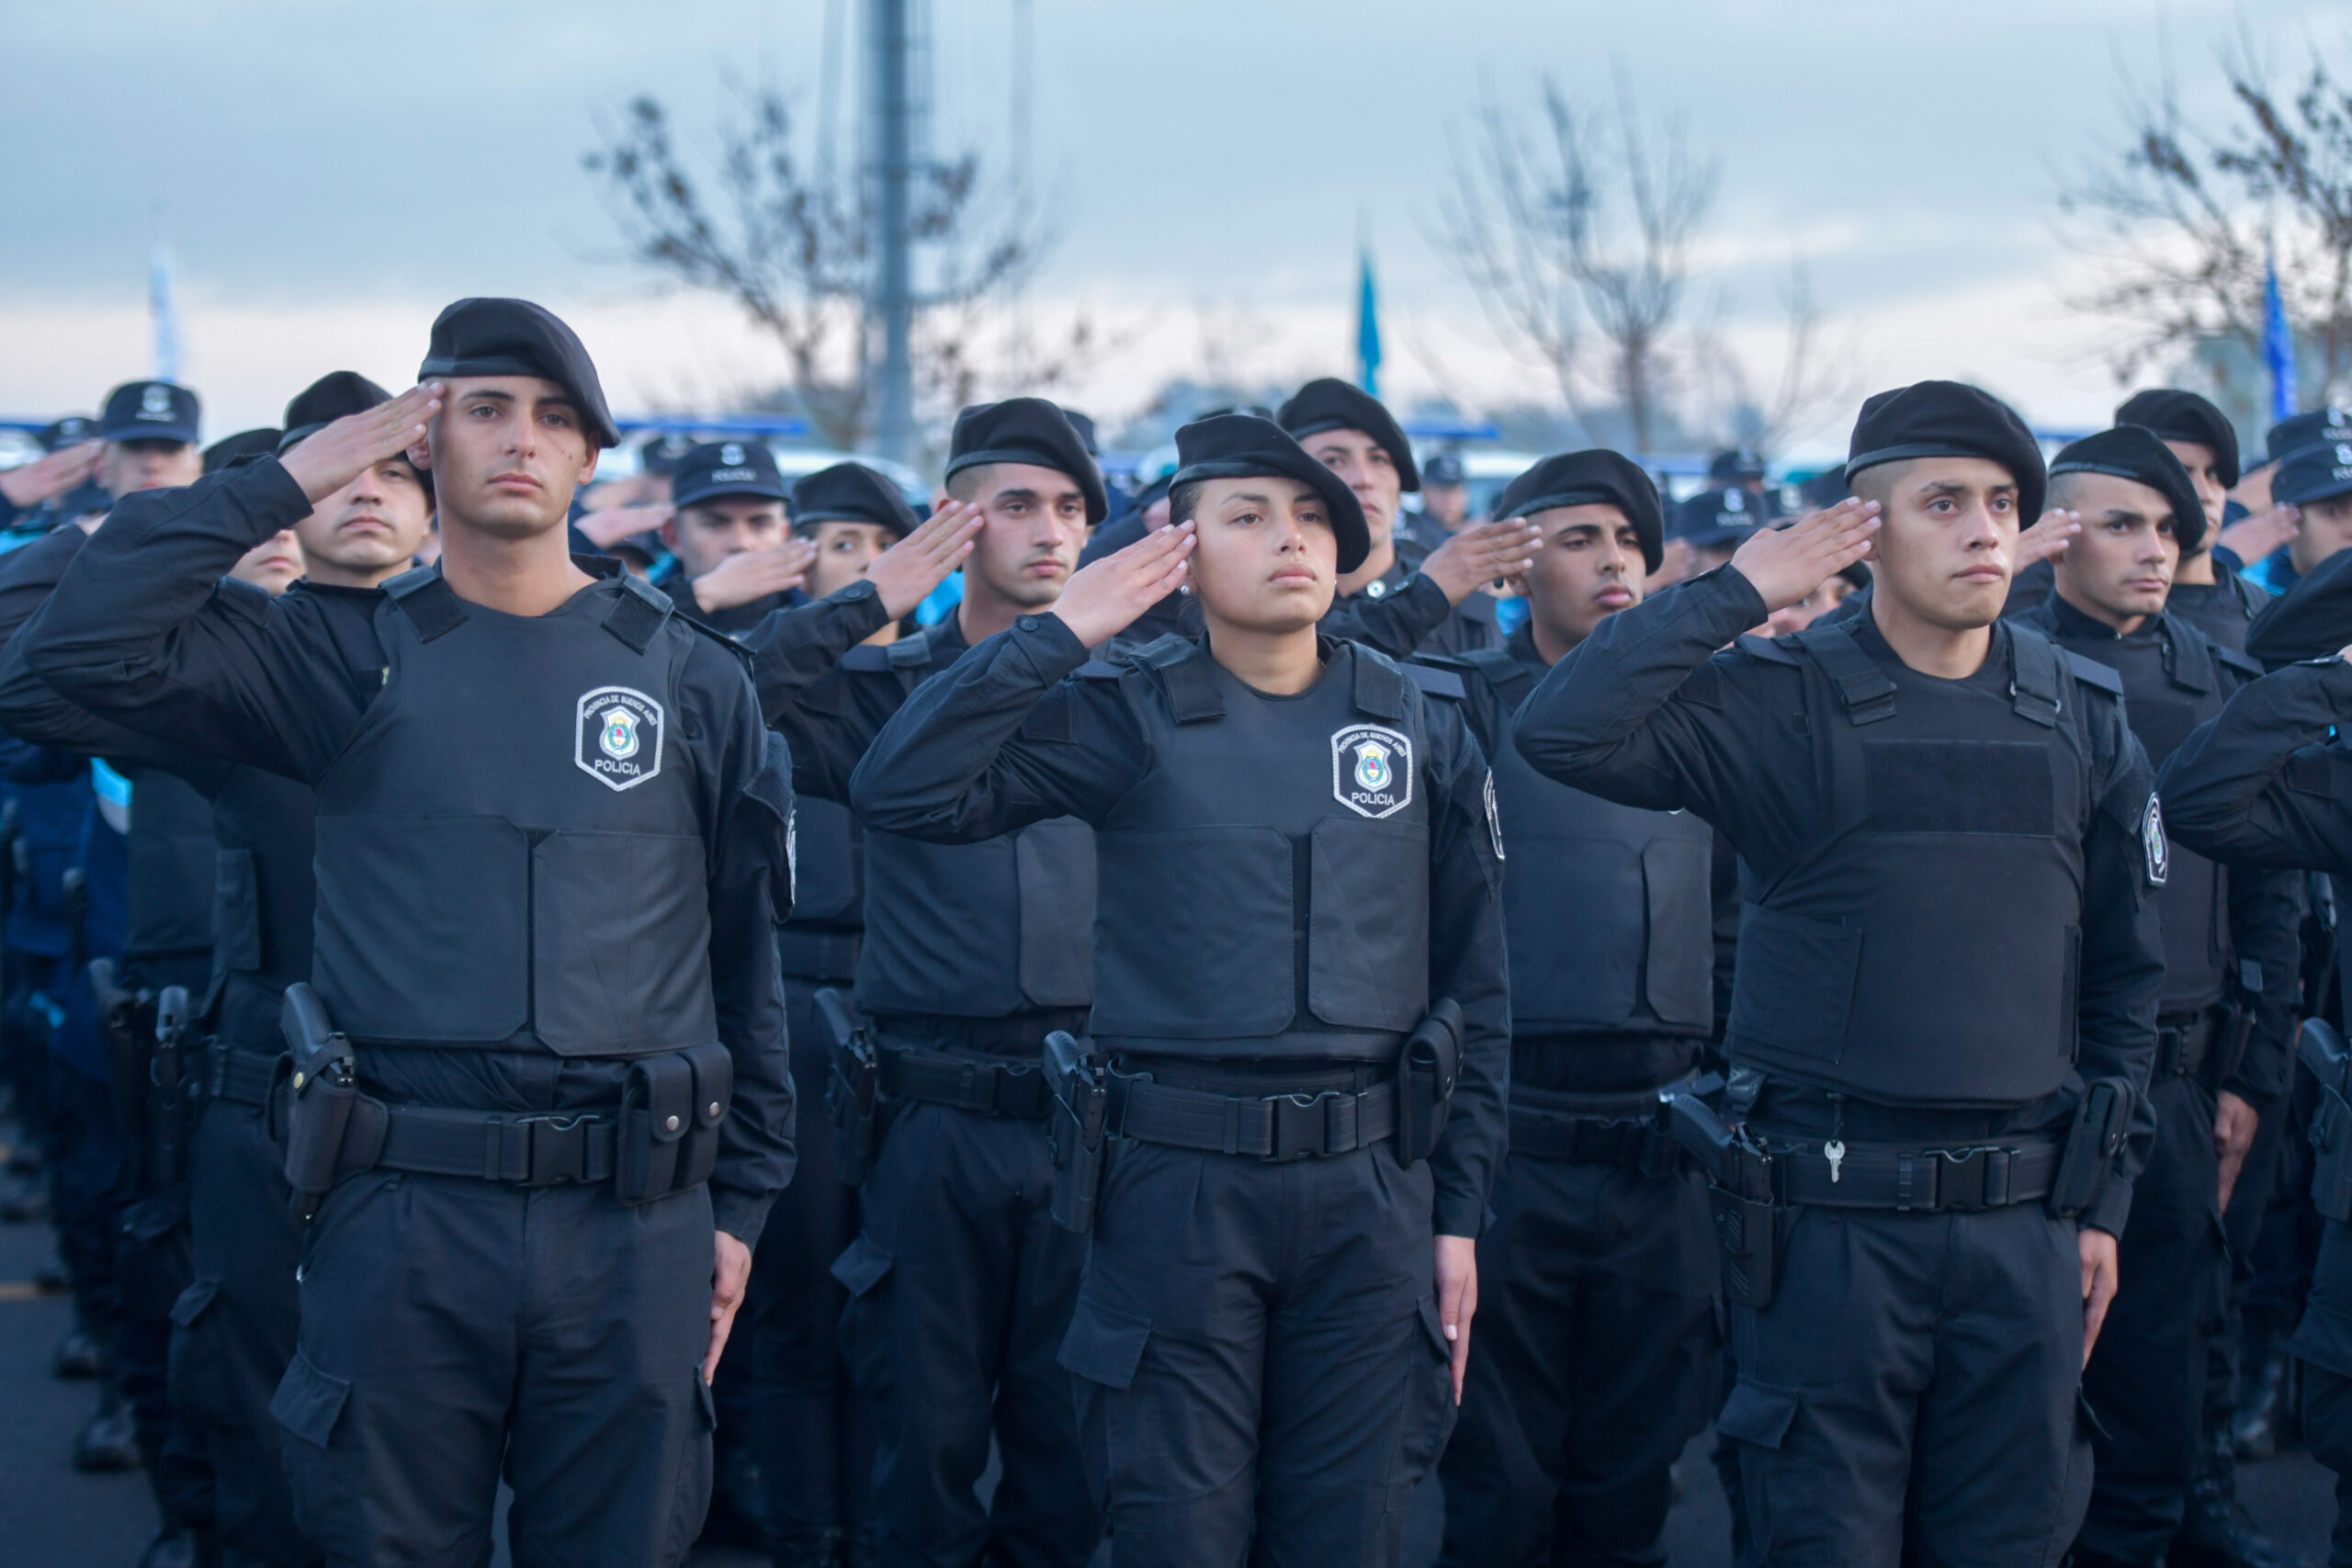 Egresaron 1.500 cadetes de la Escuela de Policía “Juan Vucetich”